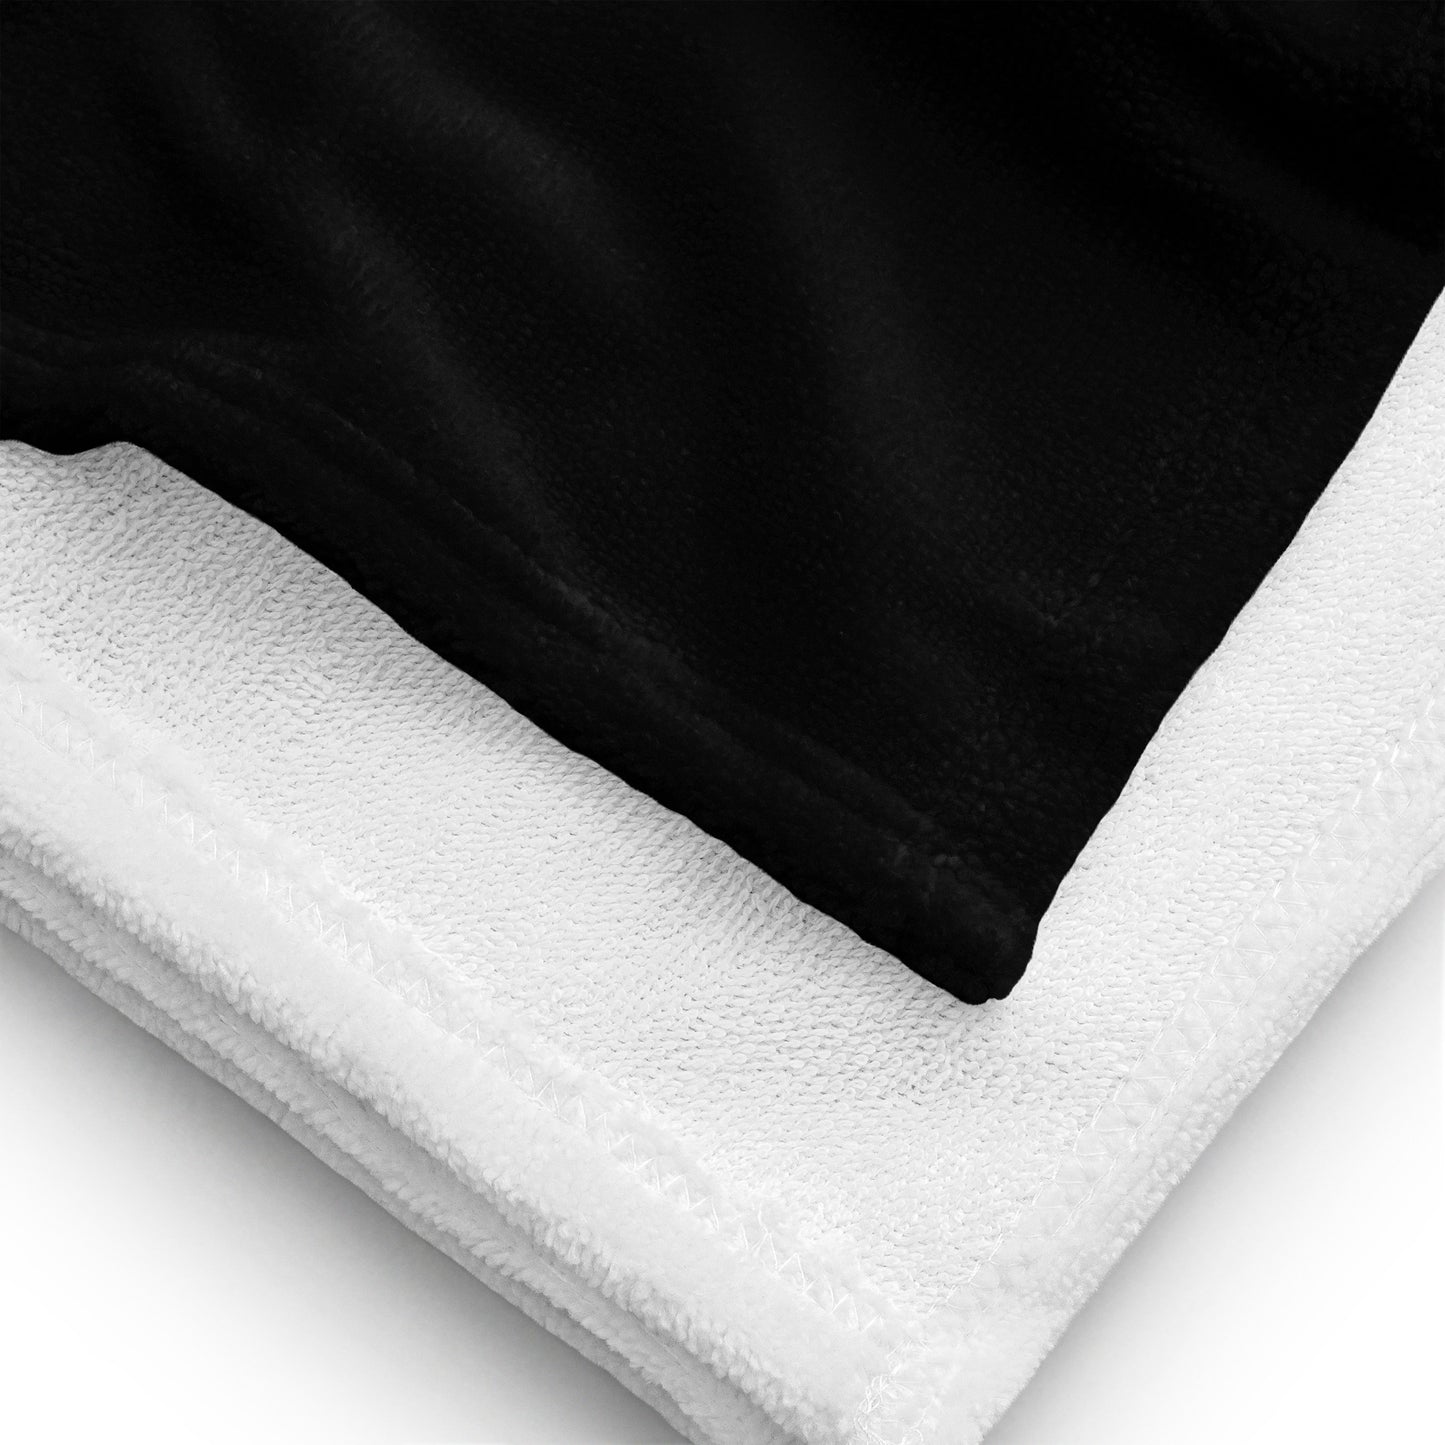 DYOR Towel, (large)